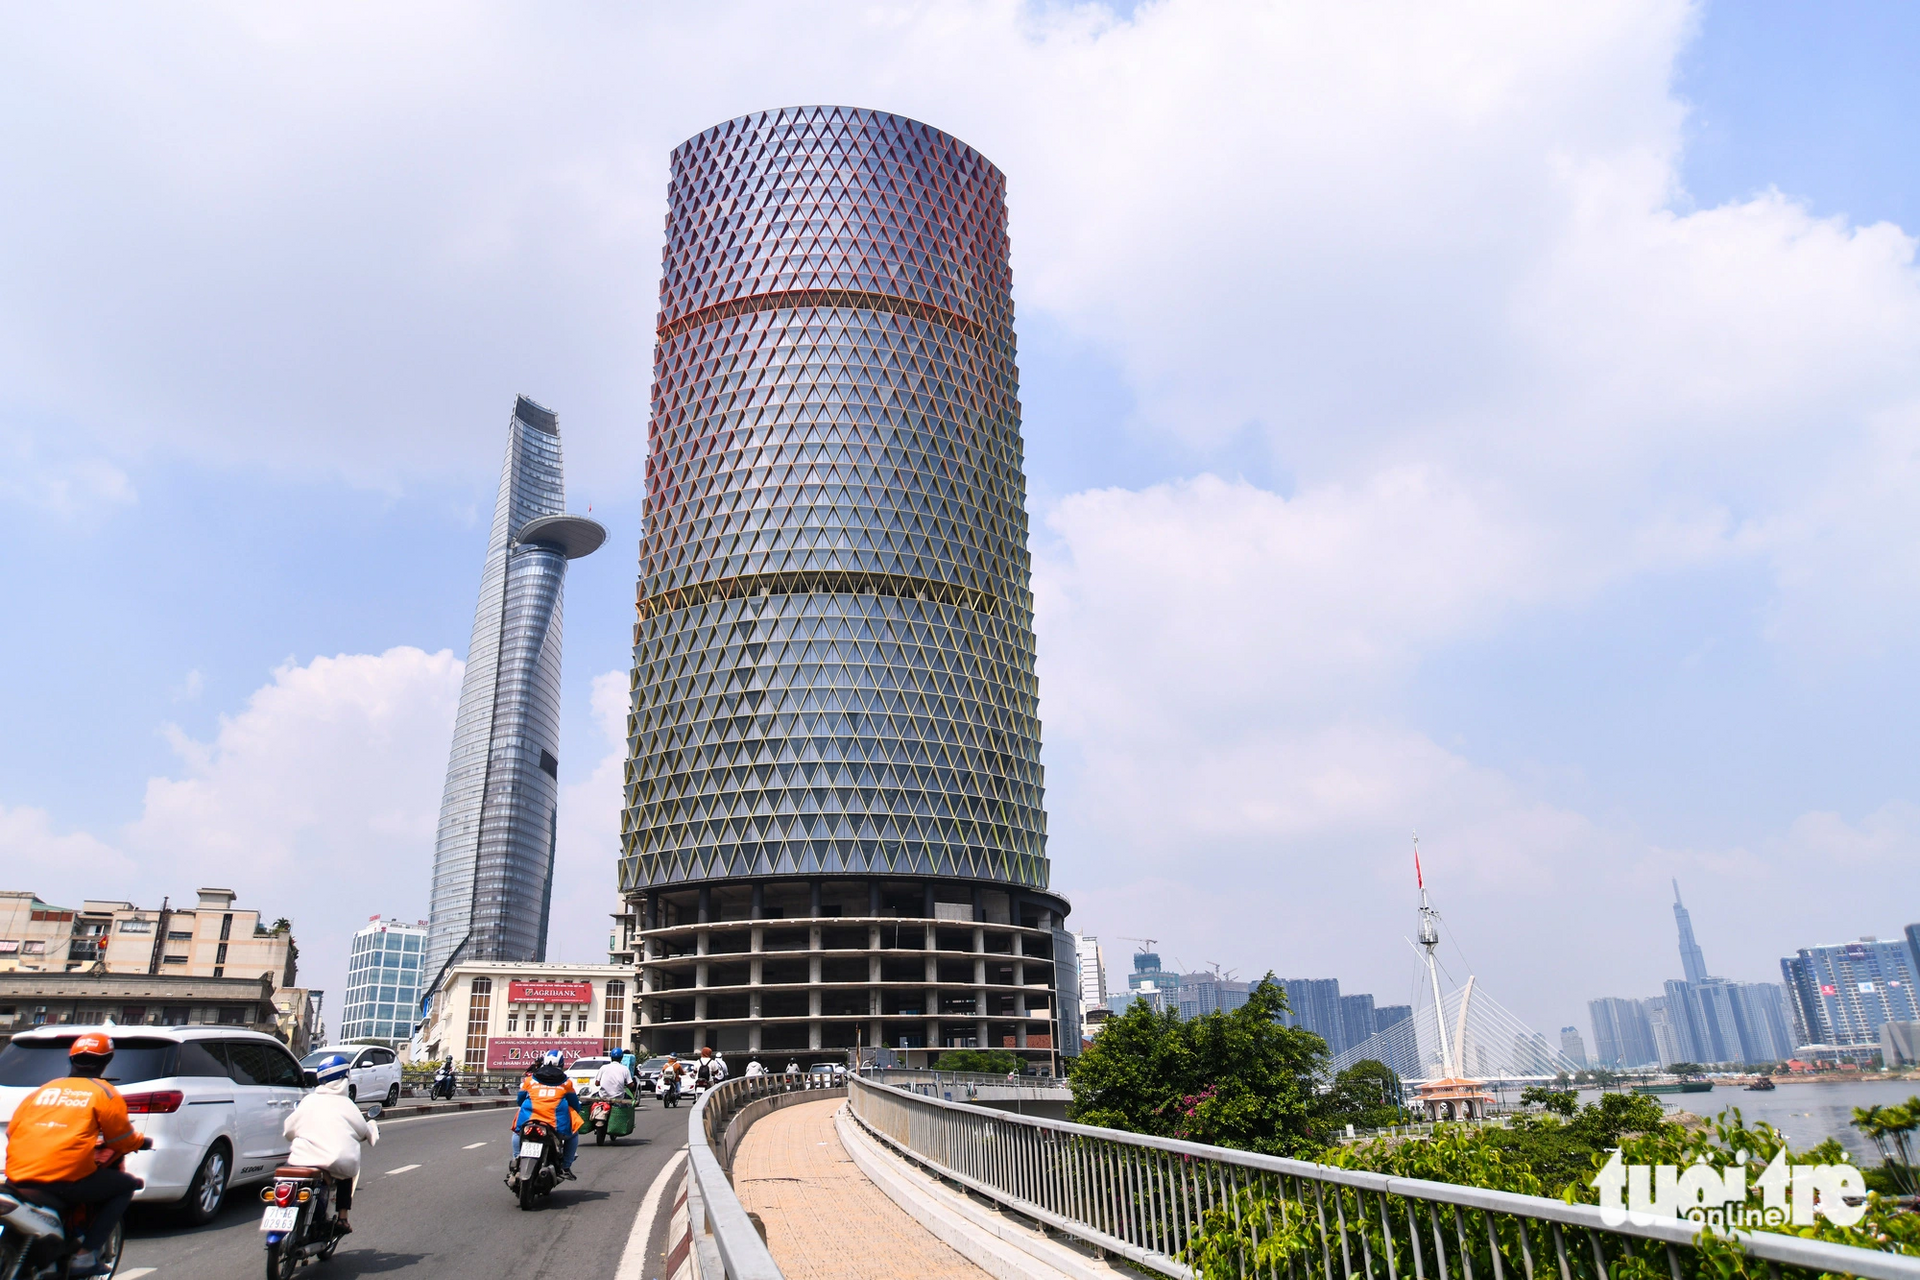 Tháng 8-2022, IFC One Saigon đã được chủ đầu tư thay lớp kính và Thanh tra Sở Xây dựng cho biết chủ đầu tư chỉ lắp kính mới để chỉnh trang đô thị, các hạng mục khác không được làm. Sau đó, dự án lại 